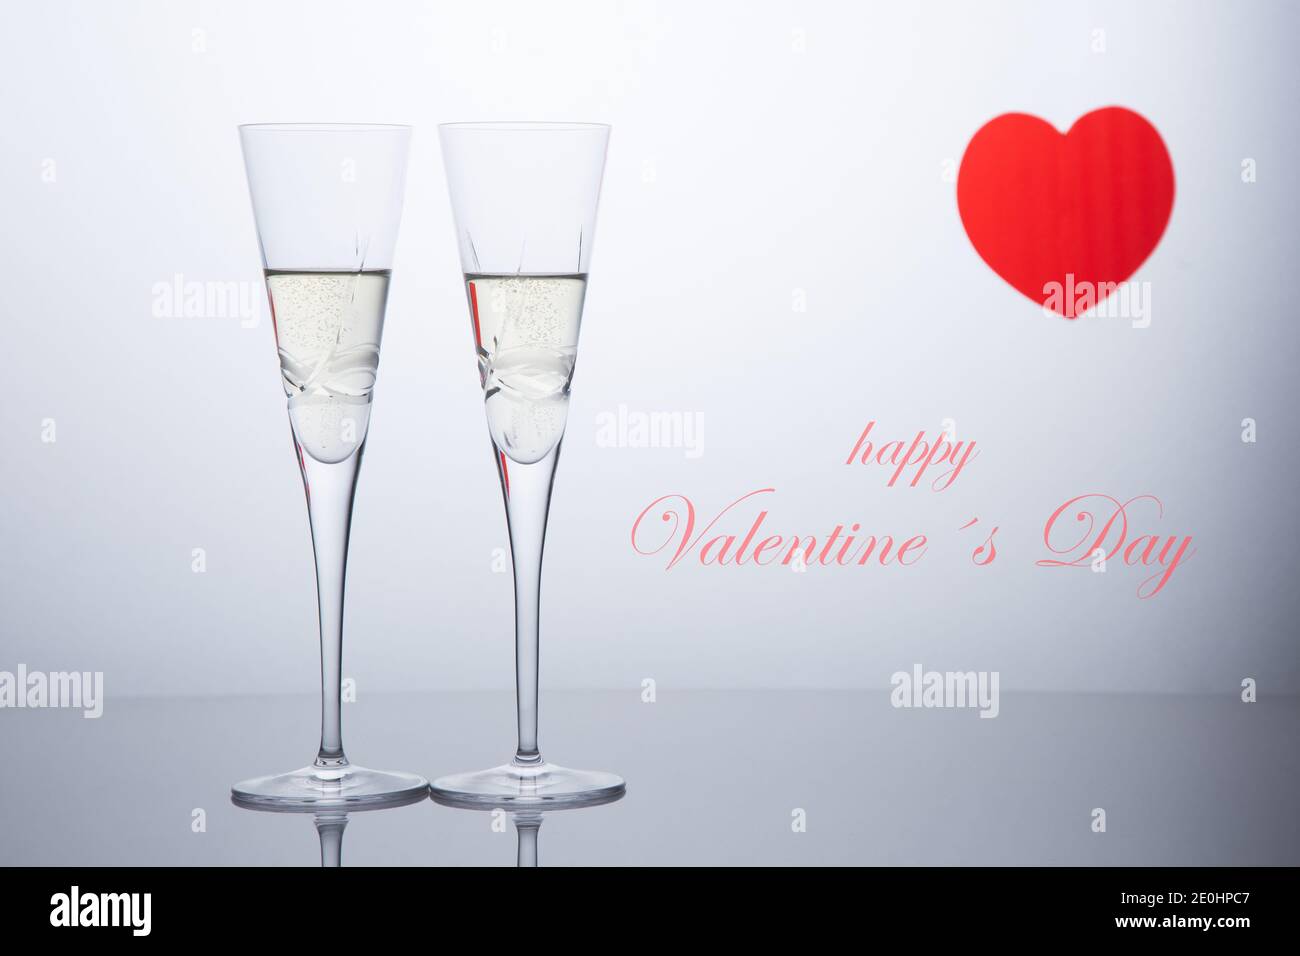 Composition de la Saint-Valentin avec deux verres de champagne et un coeur rouge. San Valentine et Love concept. Banque D'Images